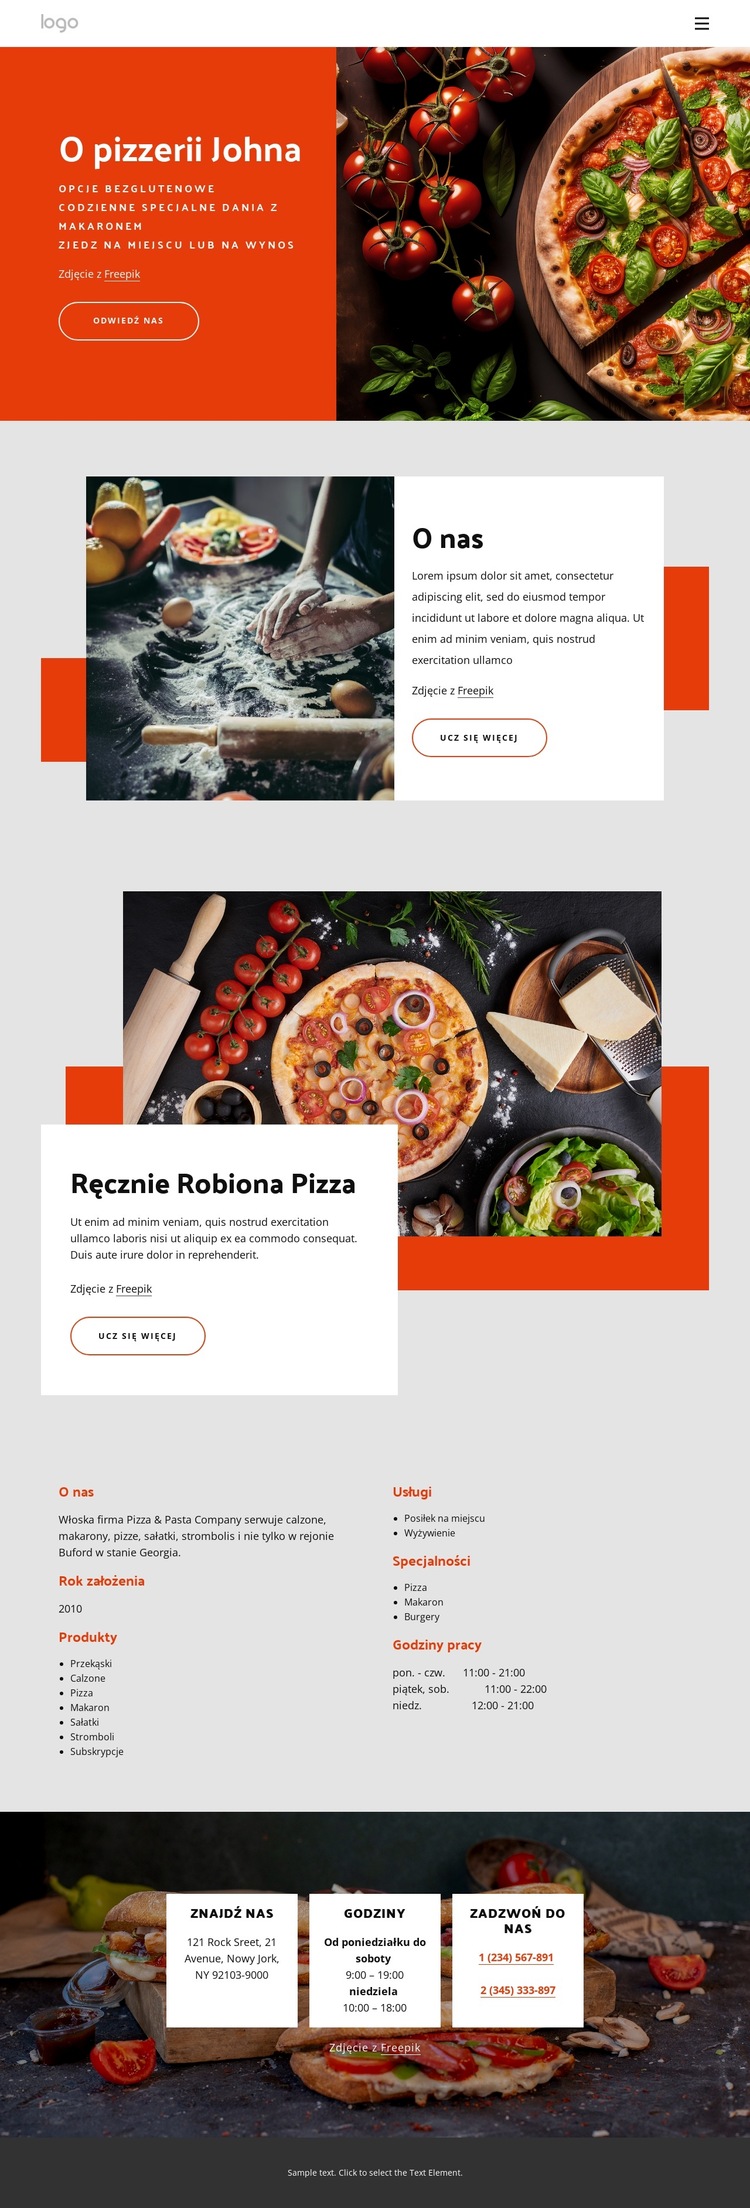 O naszej pizzerii Szablon witryny sieci Web